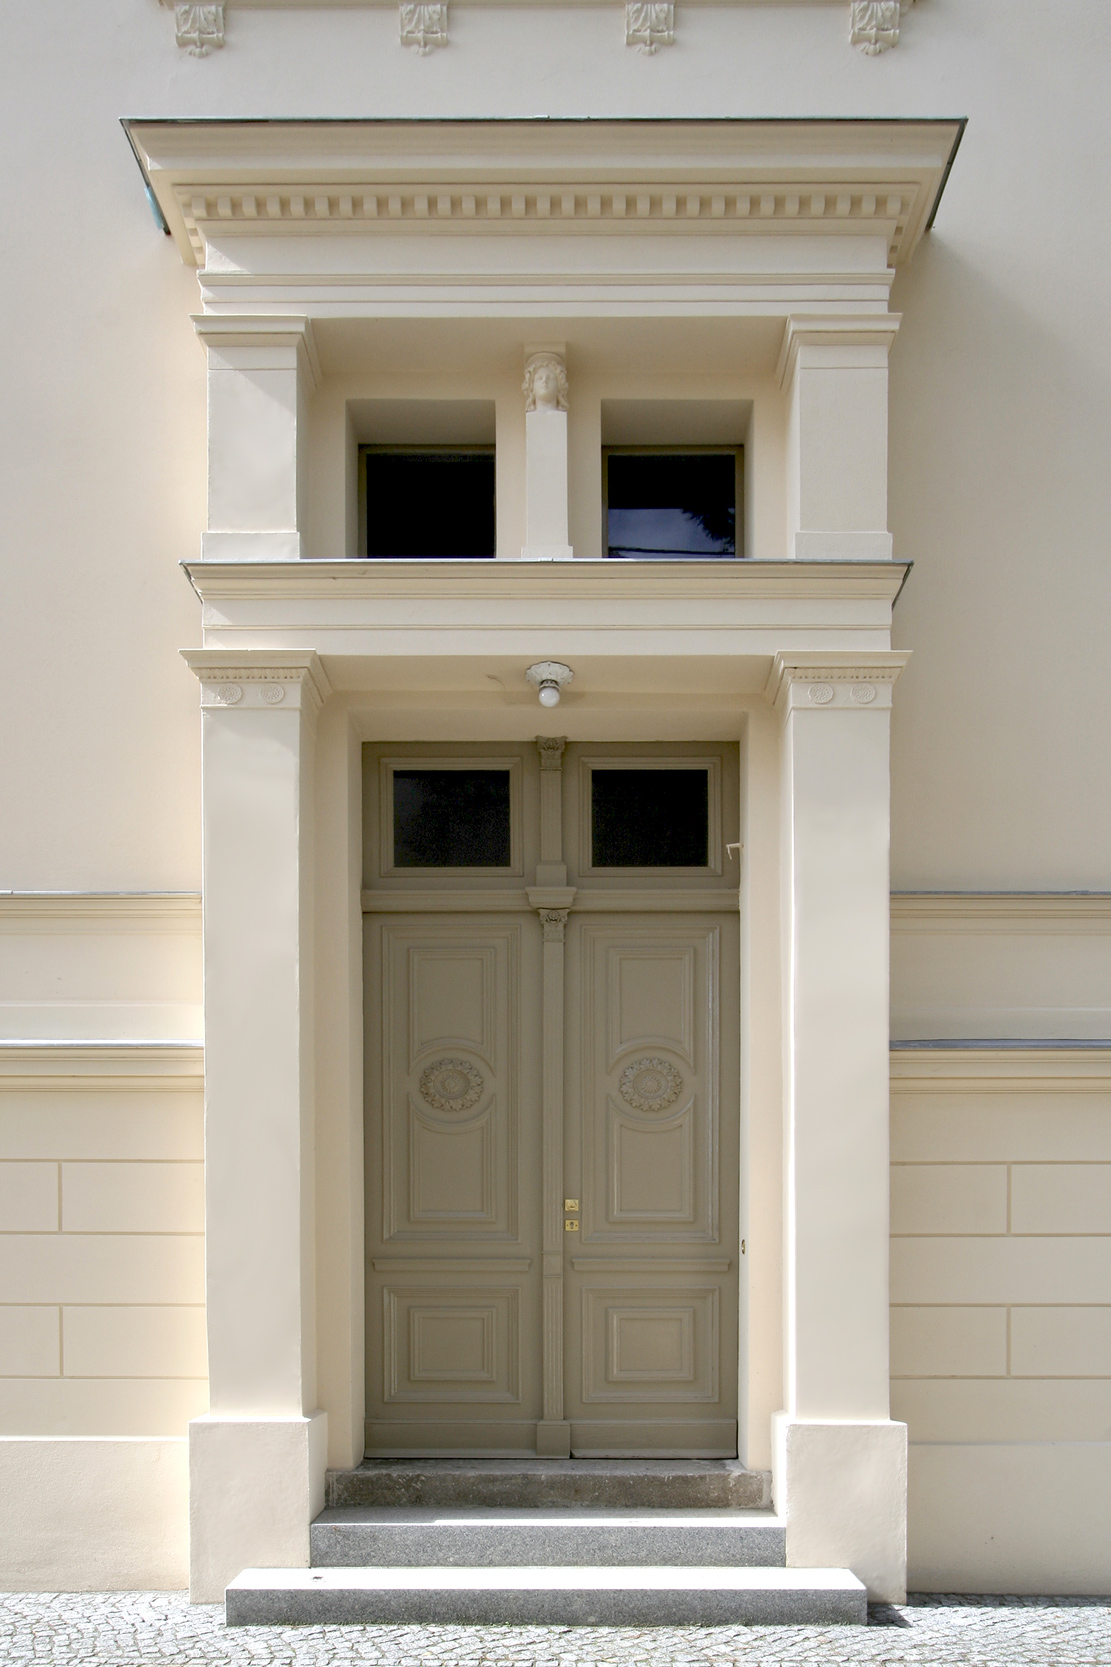 Das Eingangsportal prägt in in klassizistischer Zurückhaltung die Doppelflügeltür mit darüber liegenden Oberlichtern.